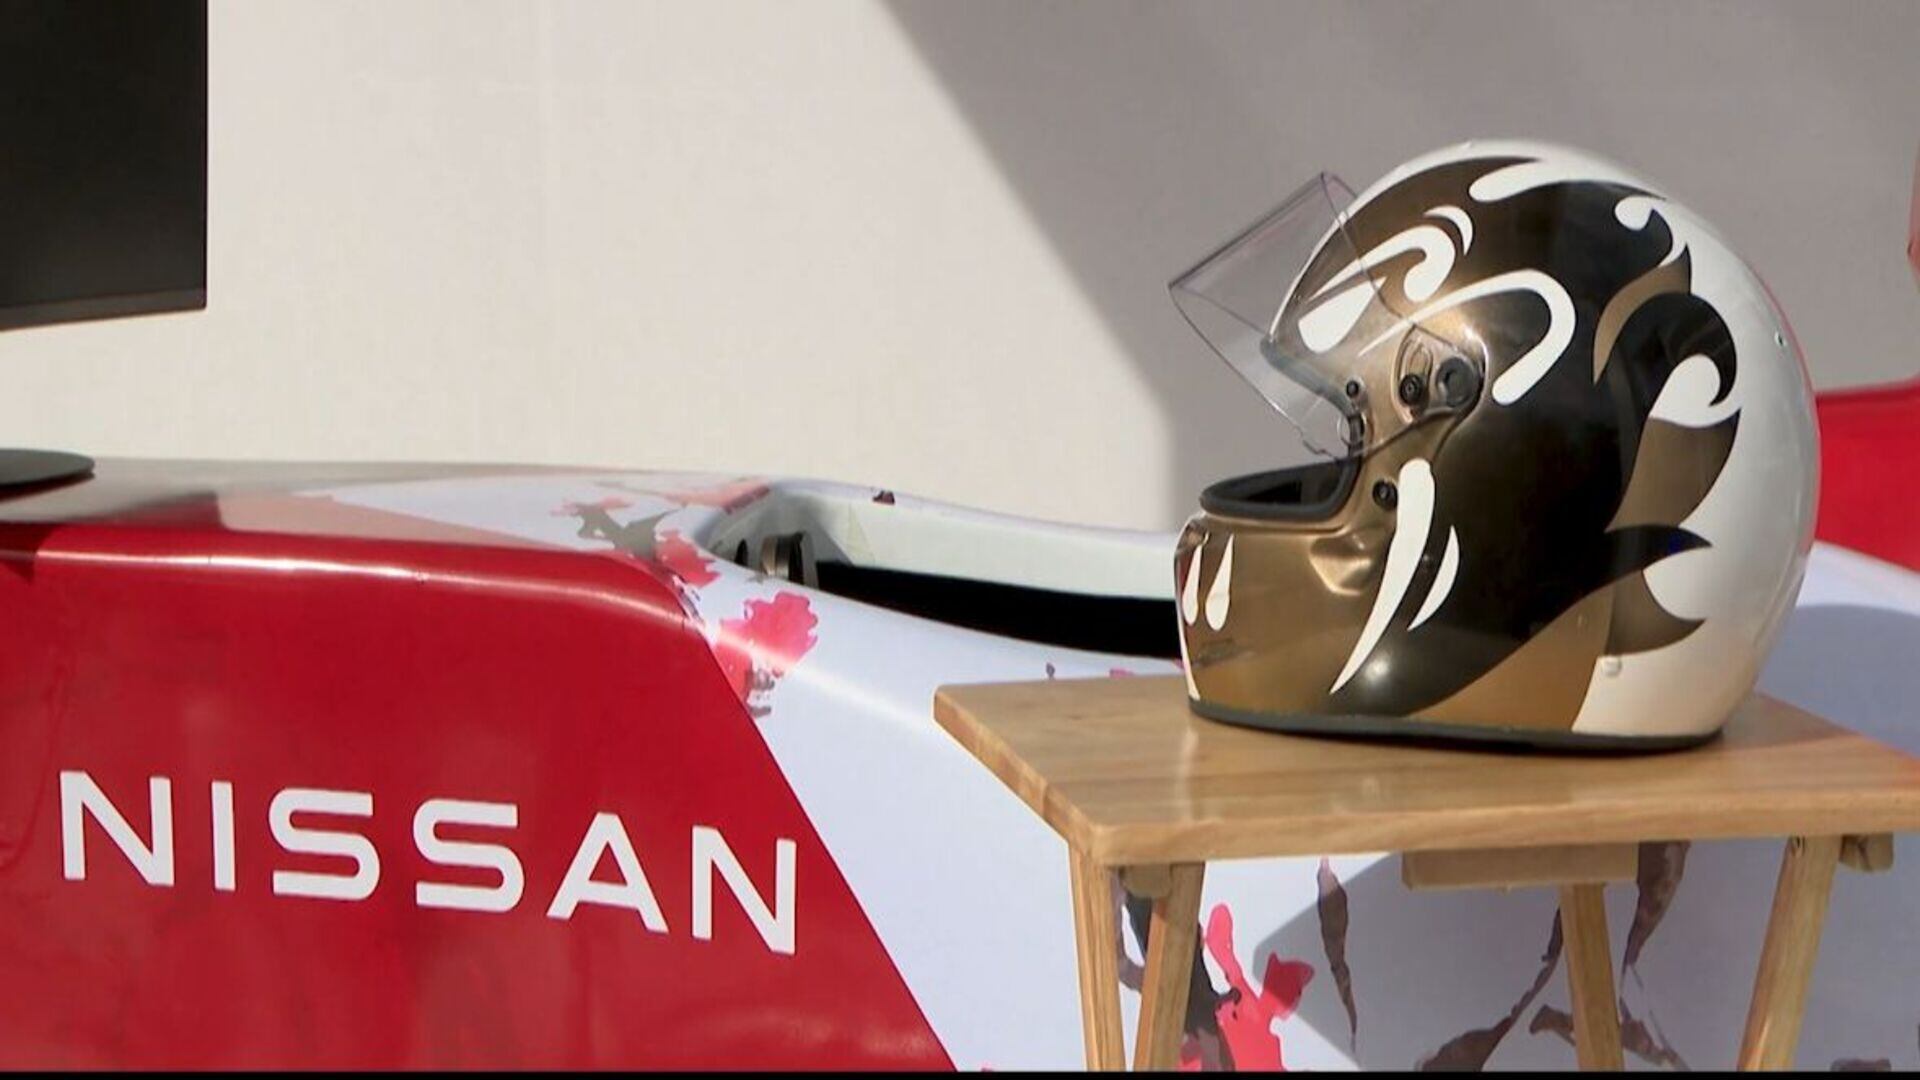 Nissan Emotion Helmet, casco que muestra del uso de la tecnología en el ramo automotriz. (Cortesía Nissan)